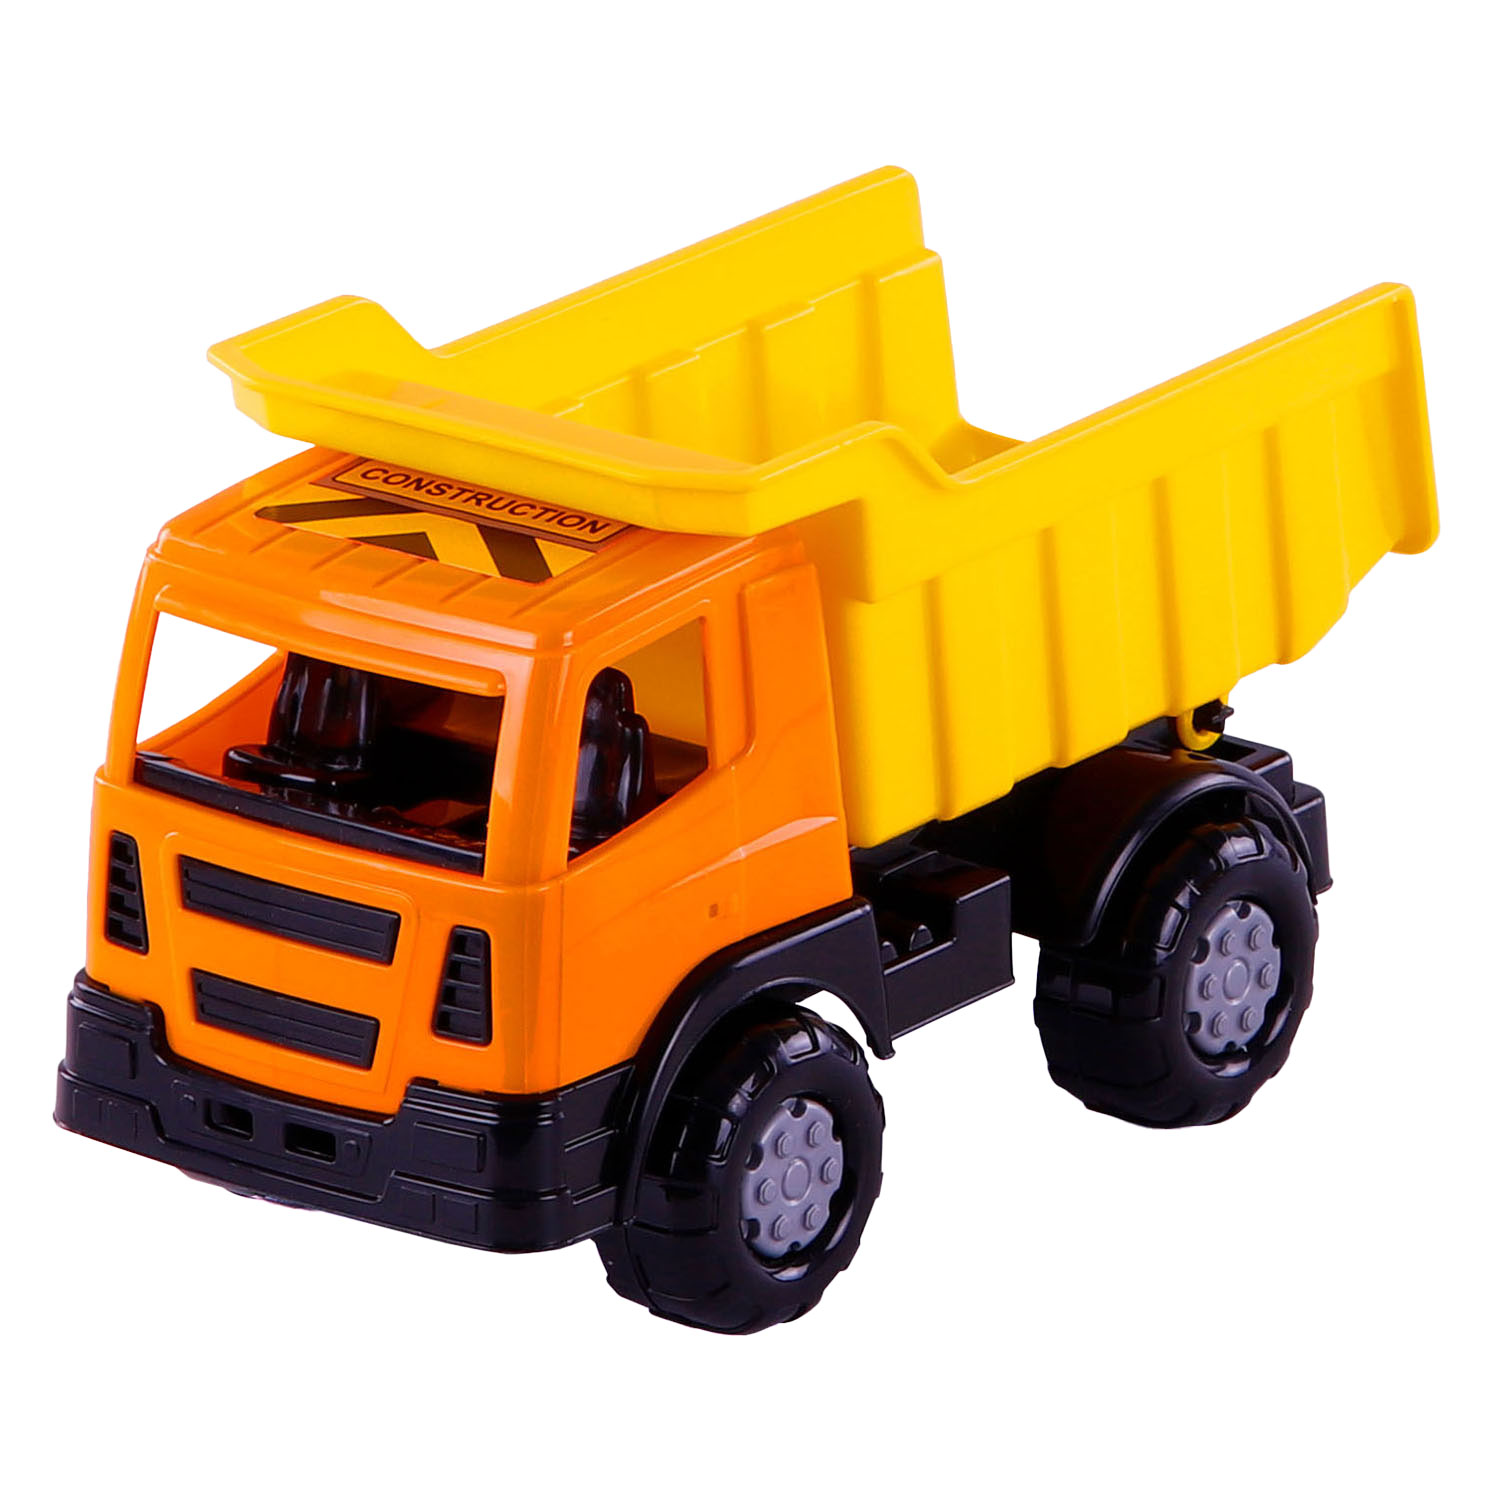 Camion-benne de construction Cavallino, 21 cm